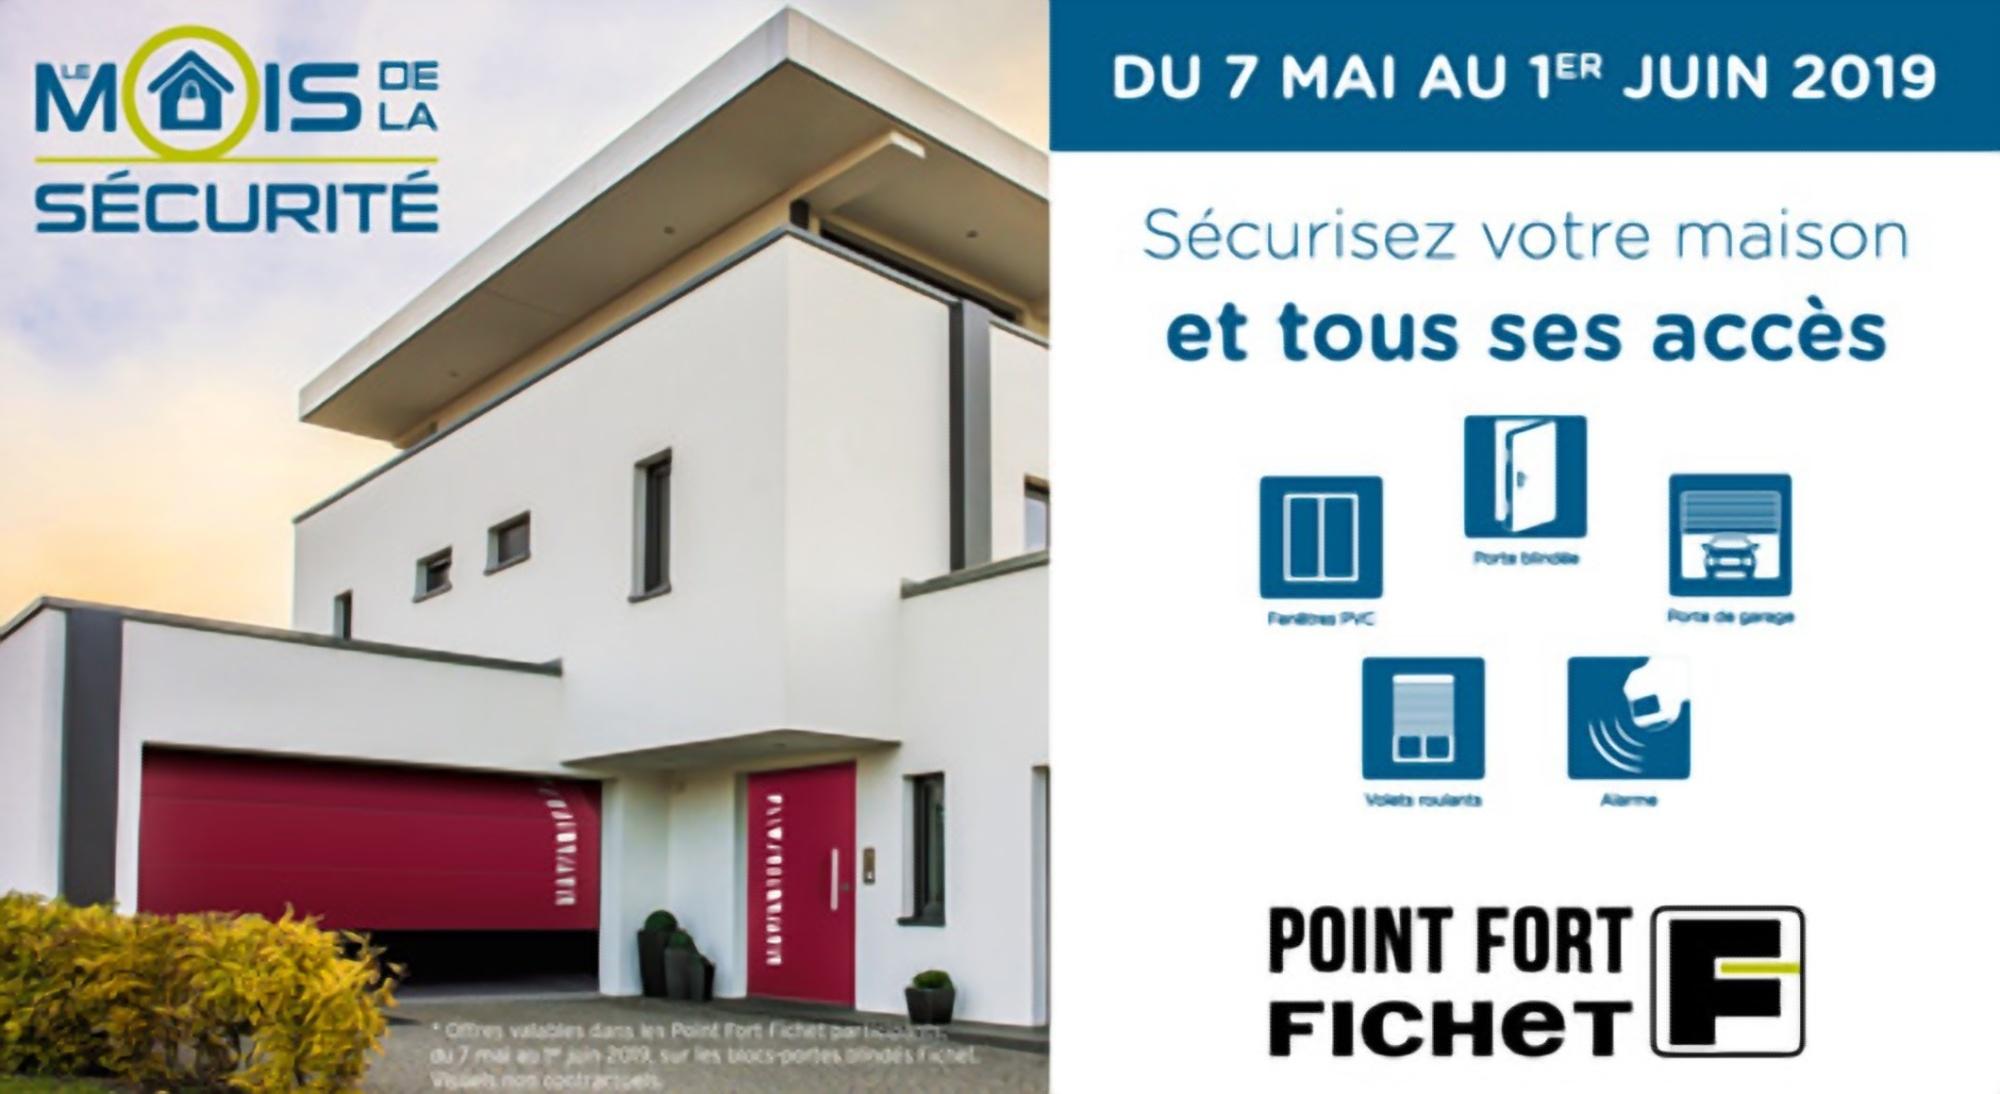 Serrurerie Rouge - Point Fort Fichet Paris